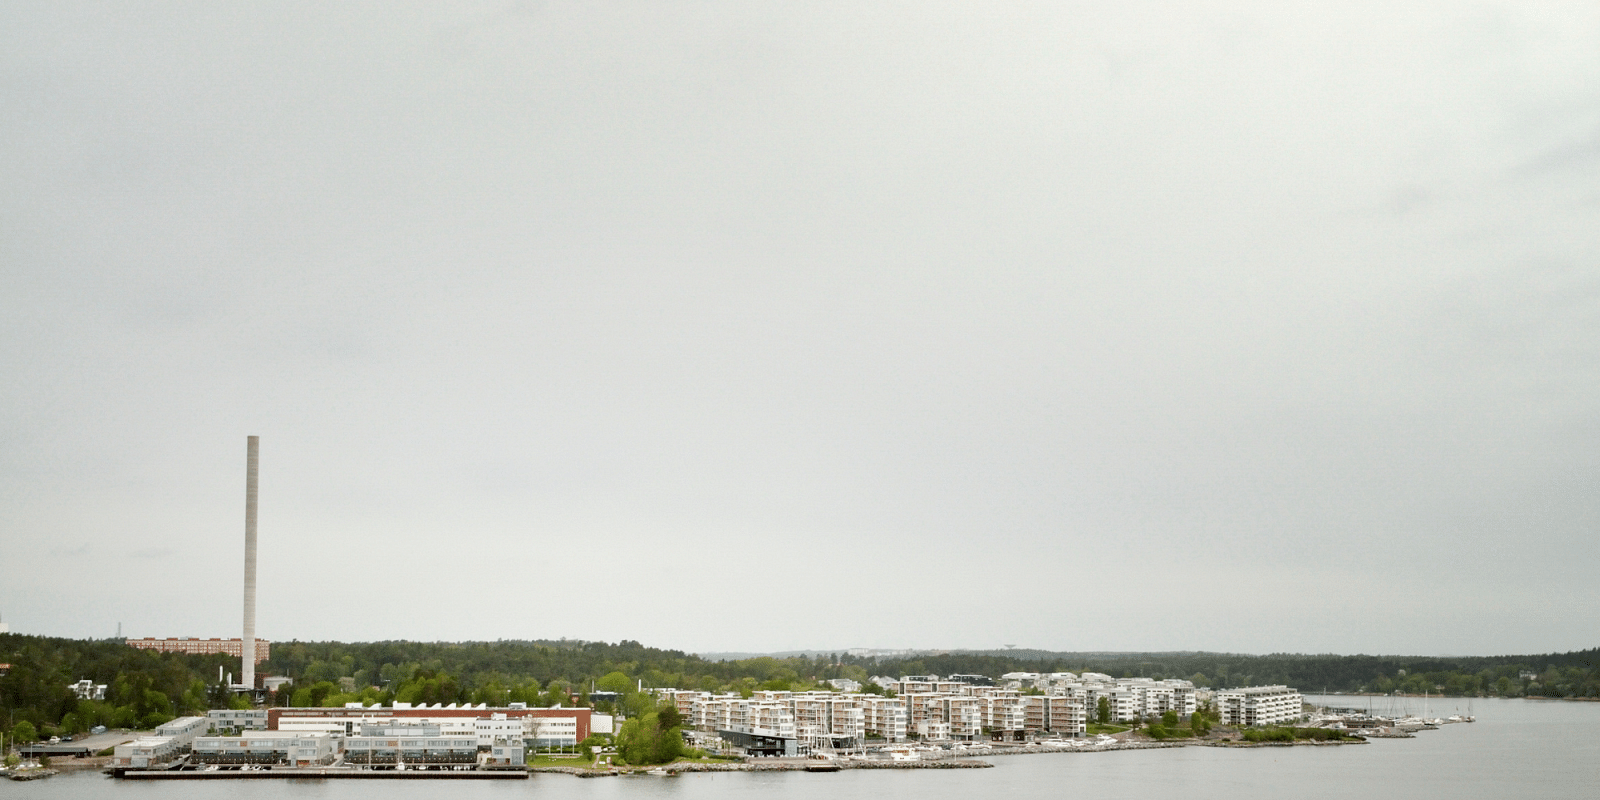 Alugar um barco em Gåshaga